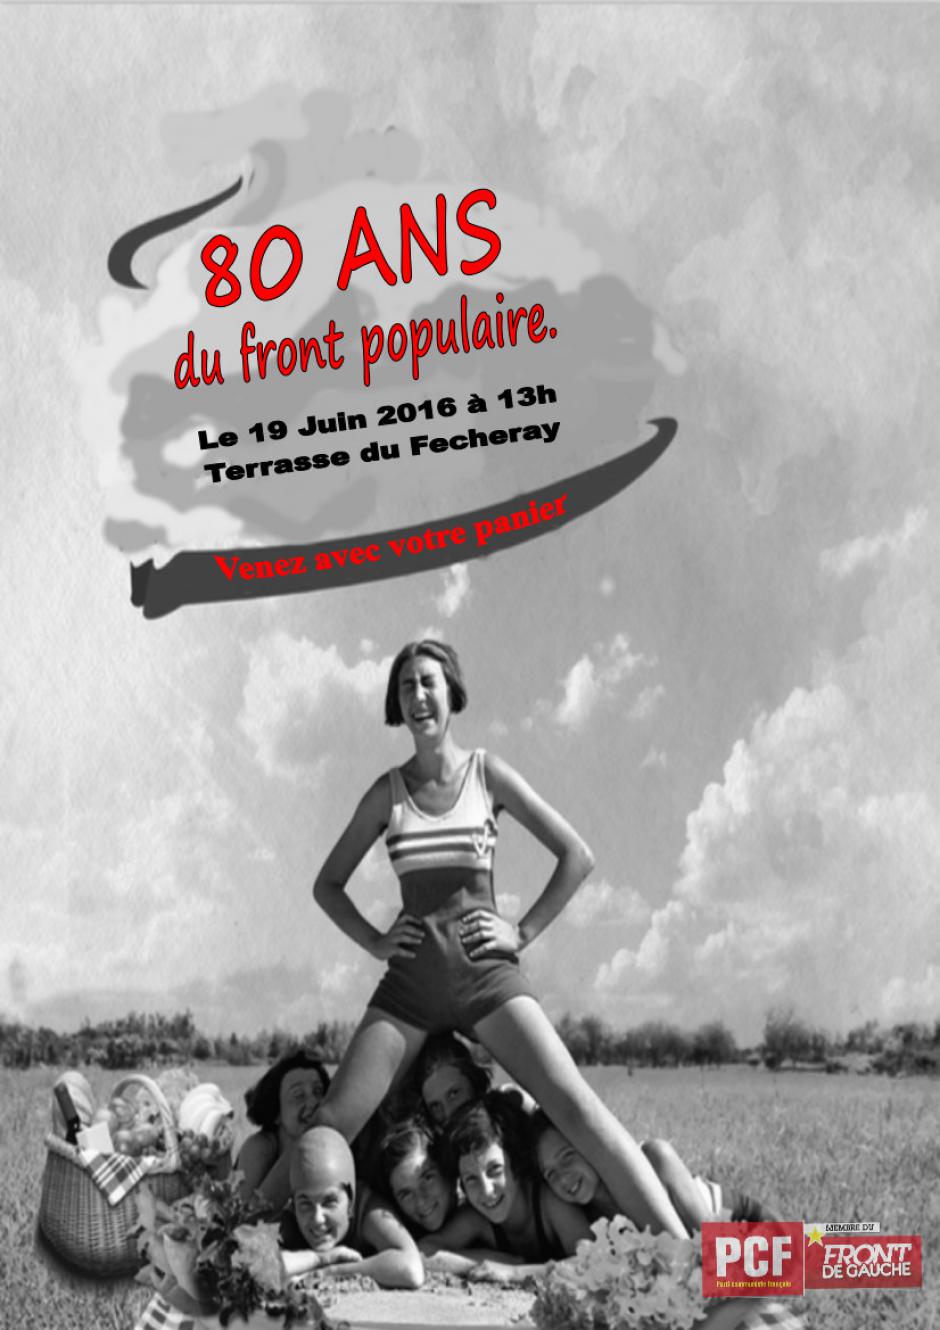 Participez au pique nique citoyen le19 juin à partir de 13h Terrasse du Fecheray à Suresnes  pour les 80 ans du front populaire.